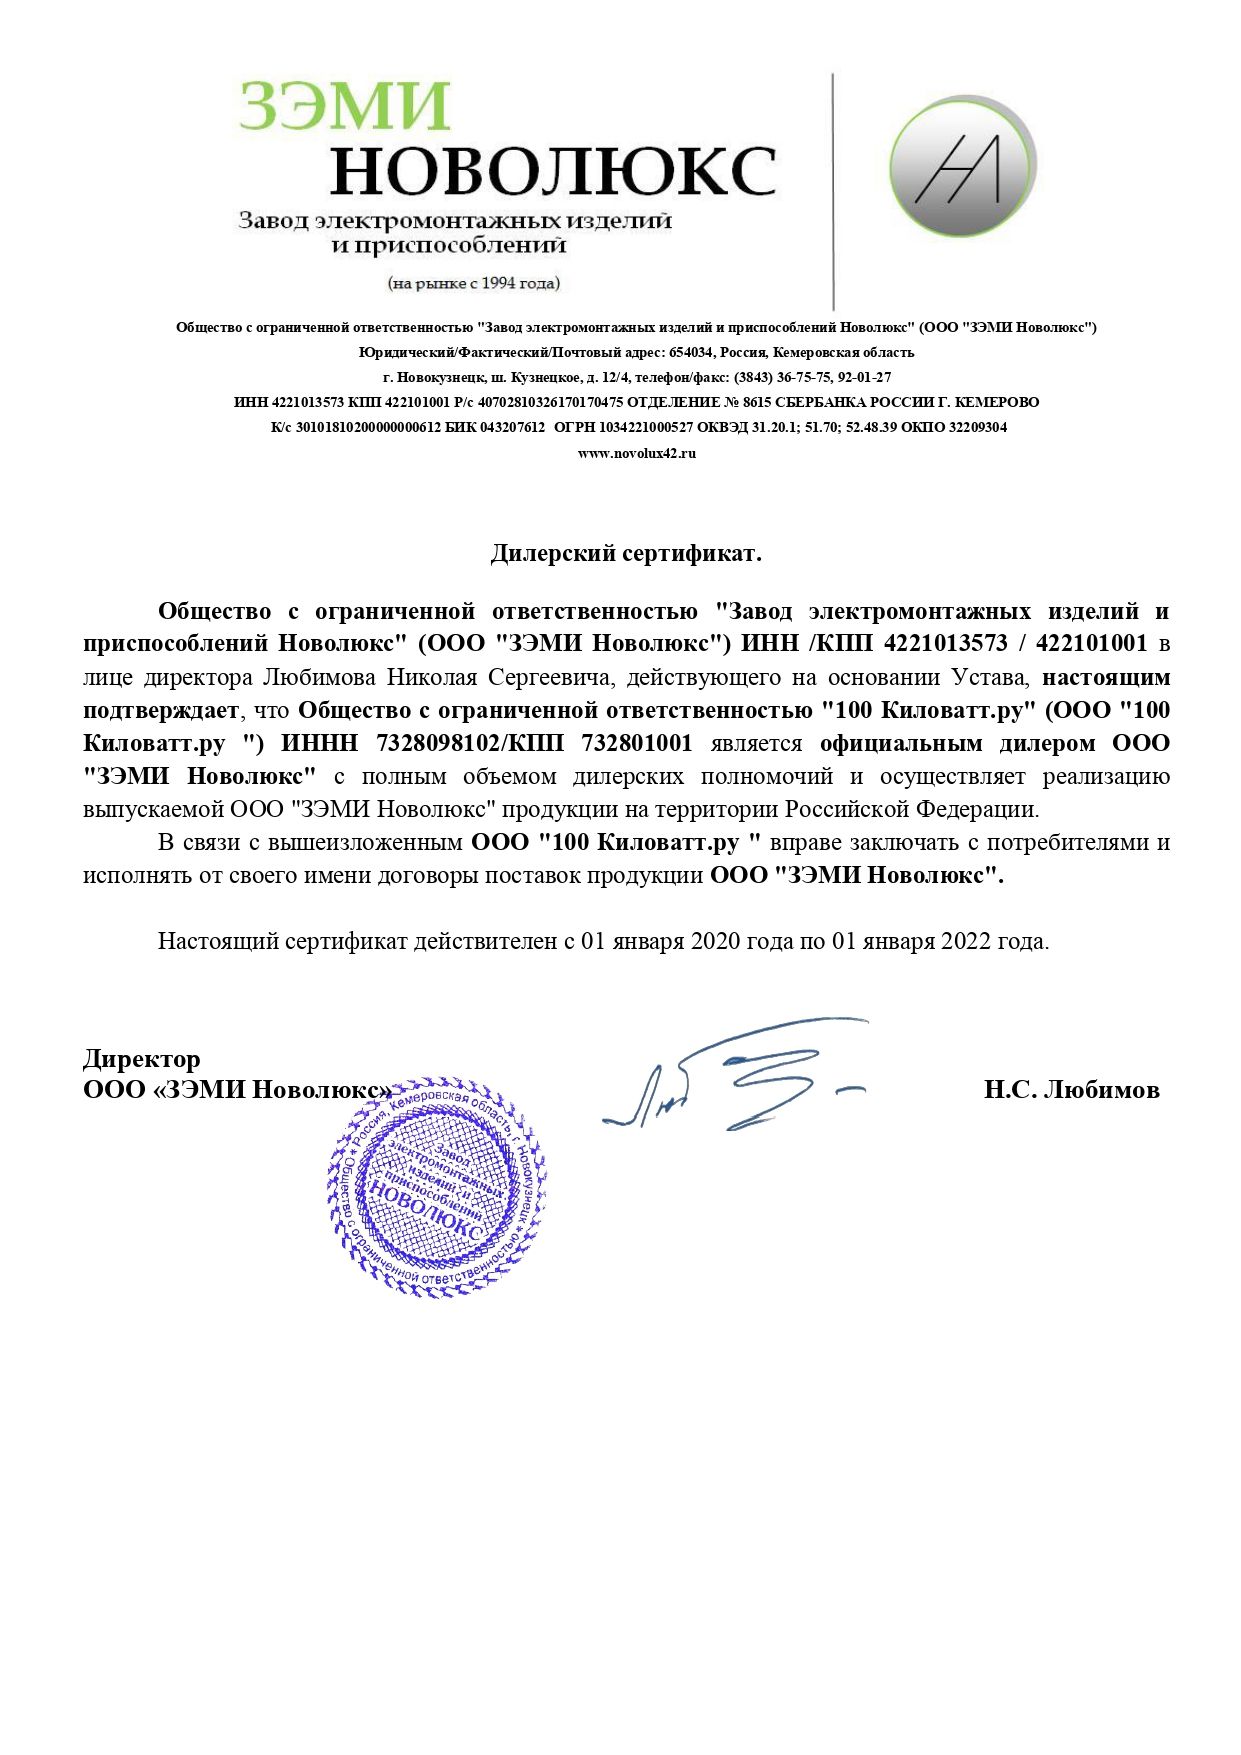 ЗЭМИ Новолюкс - сертификат дилера